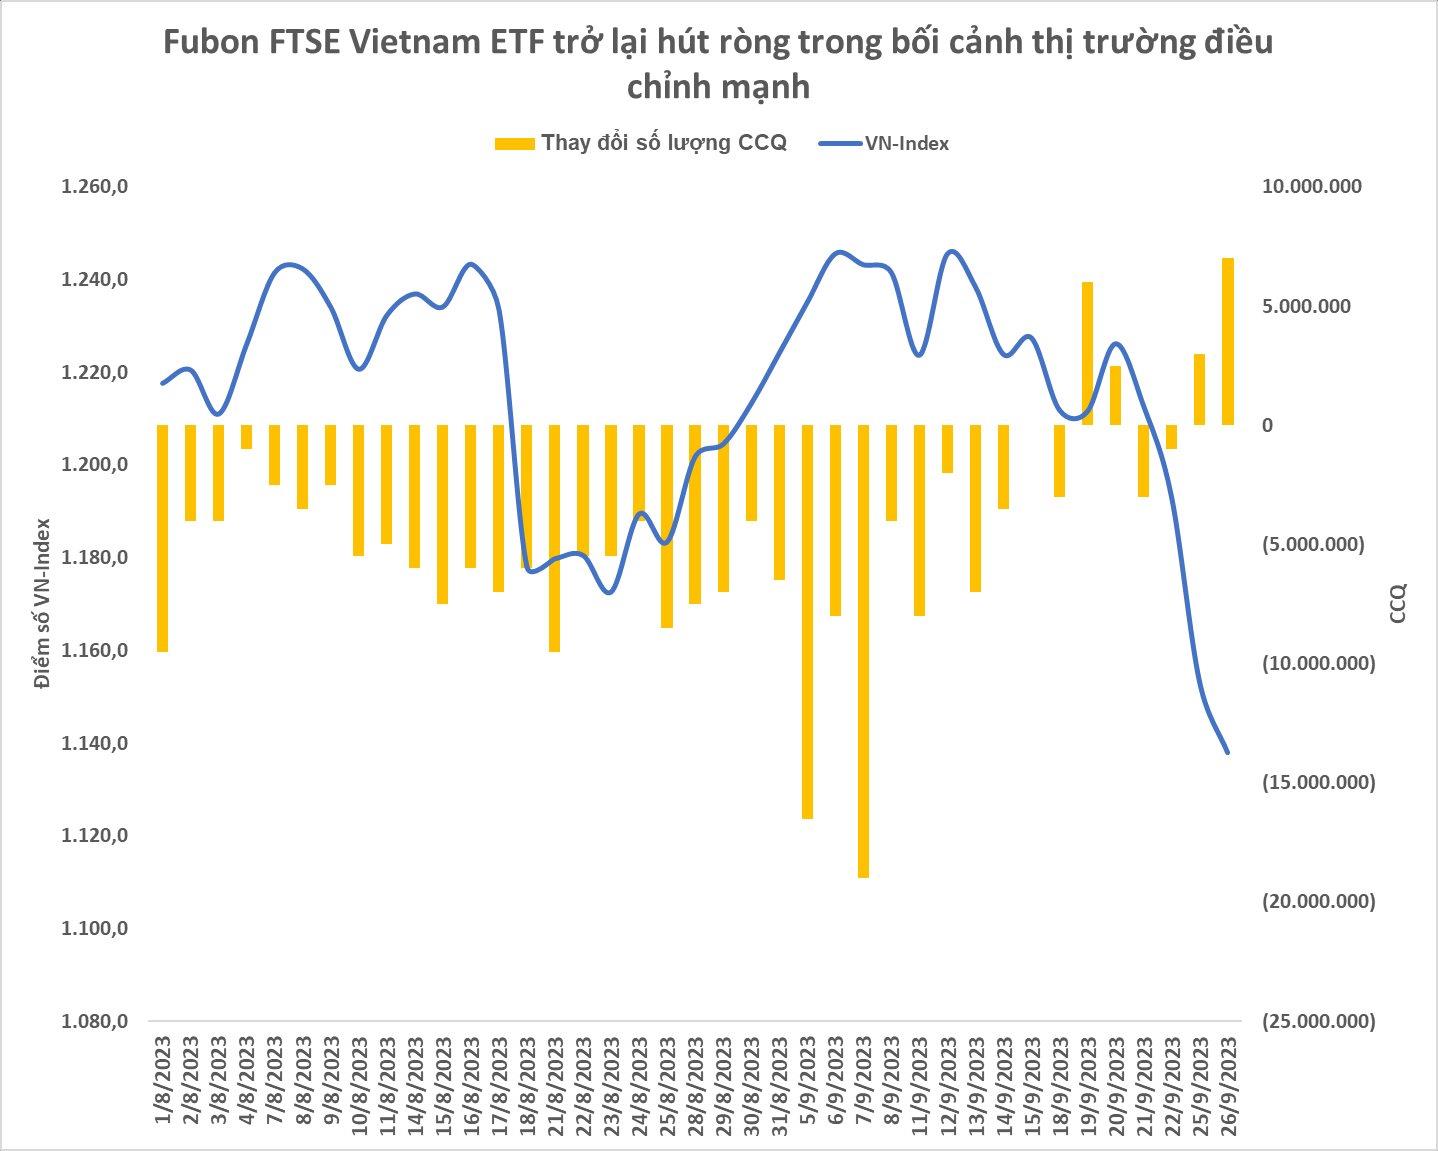 Fubon ETF trở lại mua cổ phiếu Việt Nam giữa l&#250;c thị trường chỉnh mạnh, cổ phiếu n&#224;o l&#224; t&#226;m điểm? - Ảnh 1